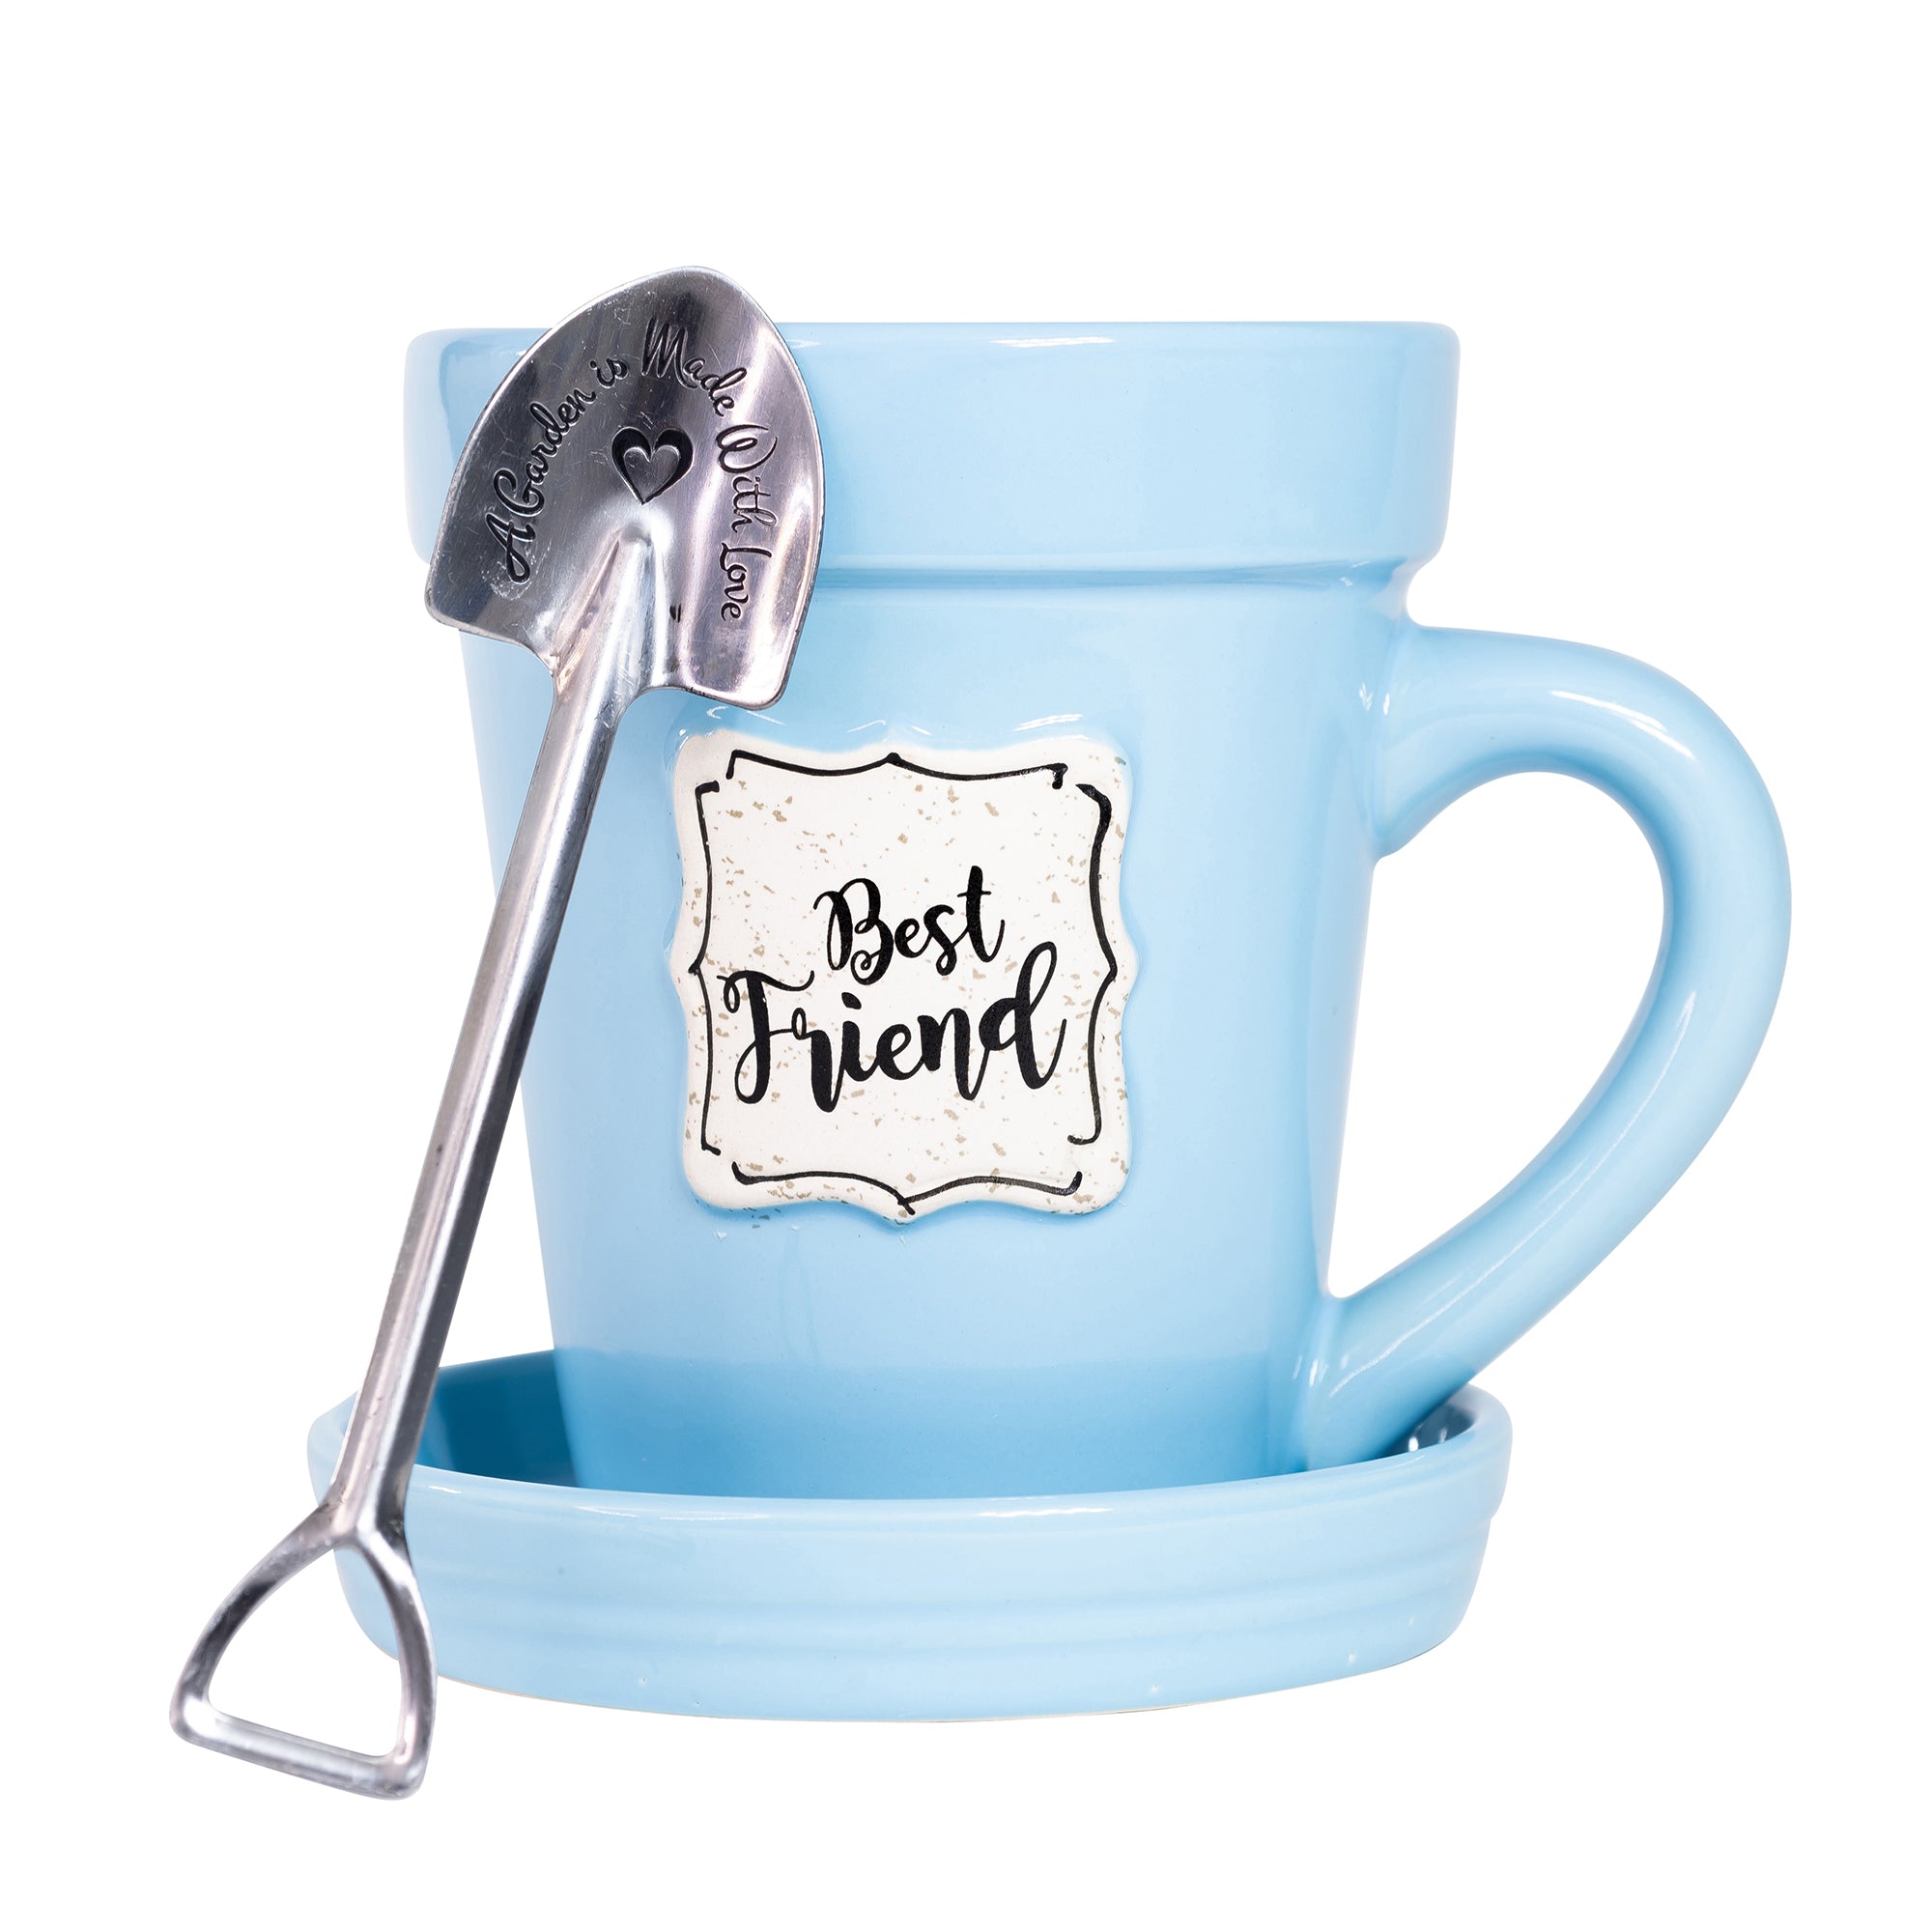 Blue Flower Pot Mug - “Best Friend”